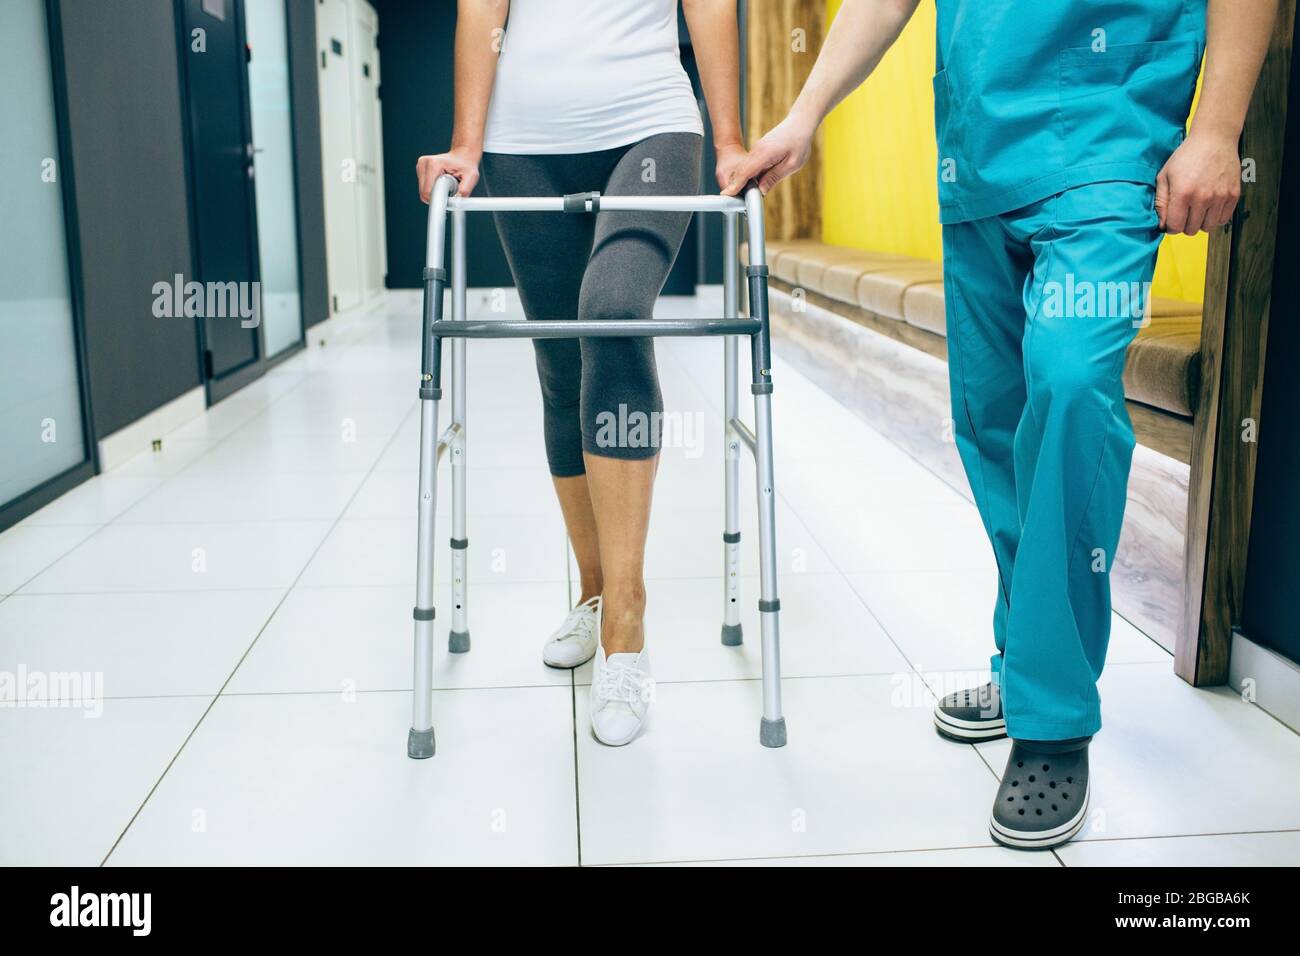 Frau mit einem Geher, geht entlang des Korridors einer modernen Rehabilitationsklinik. Rehabilitiologe hilft Patienten beim Gehen. Rehabilitation nach Verletzungen Stockfoto